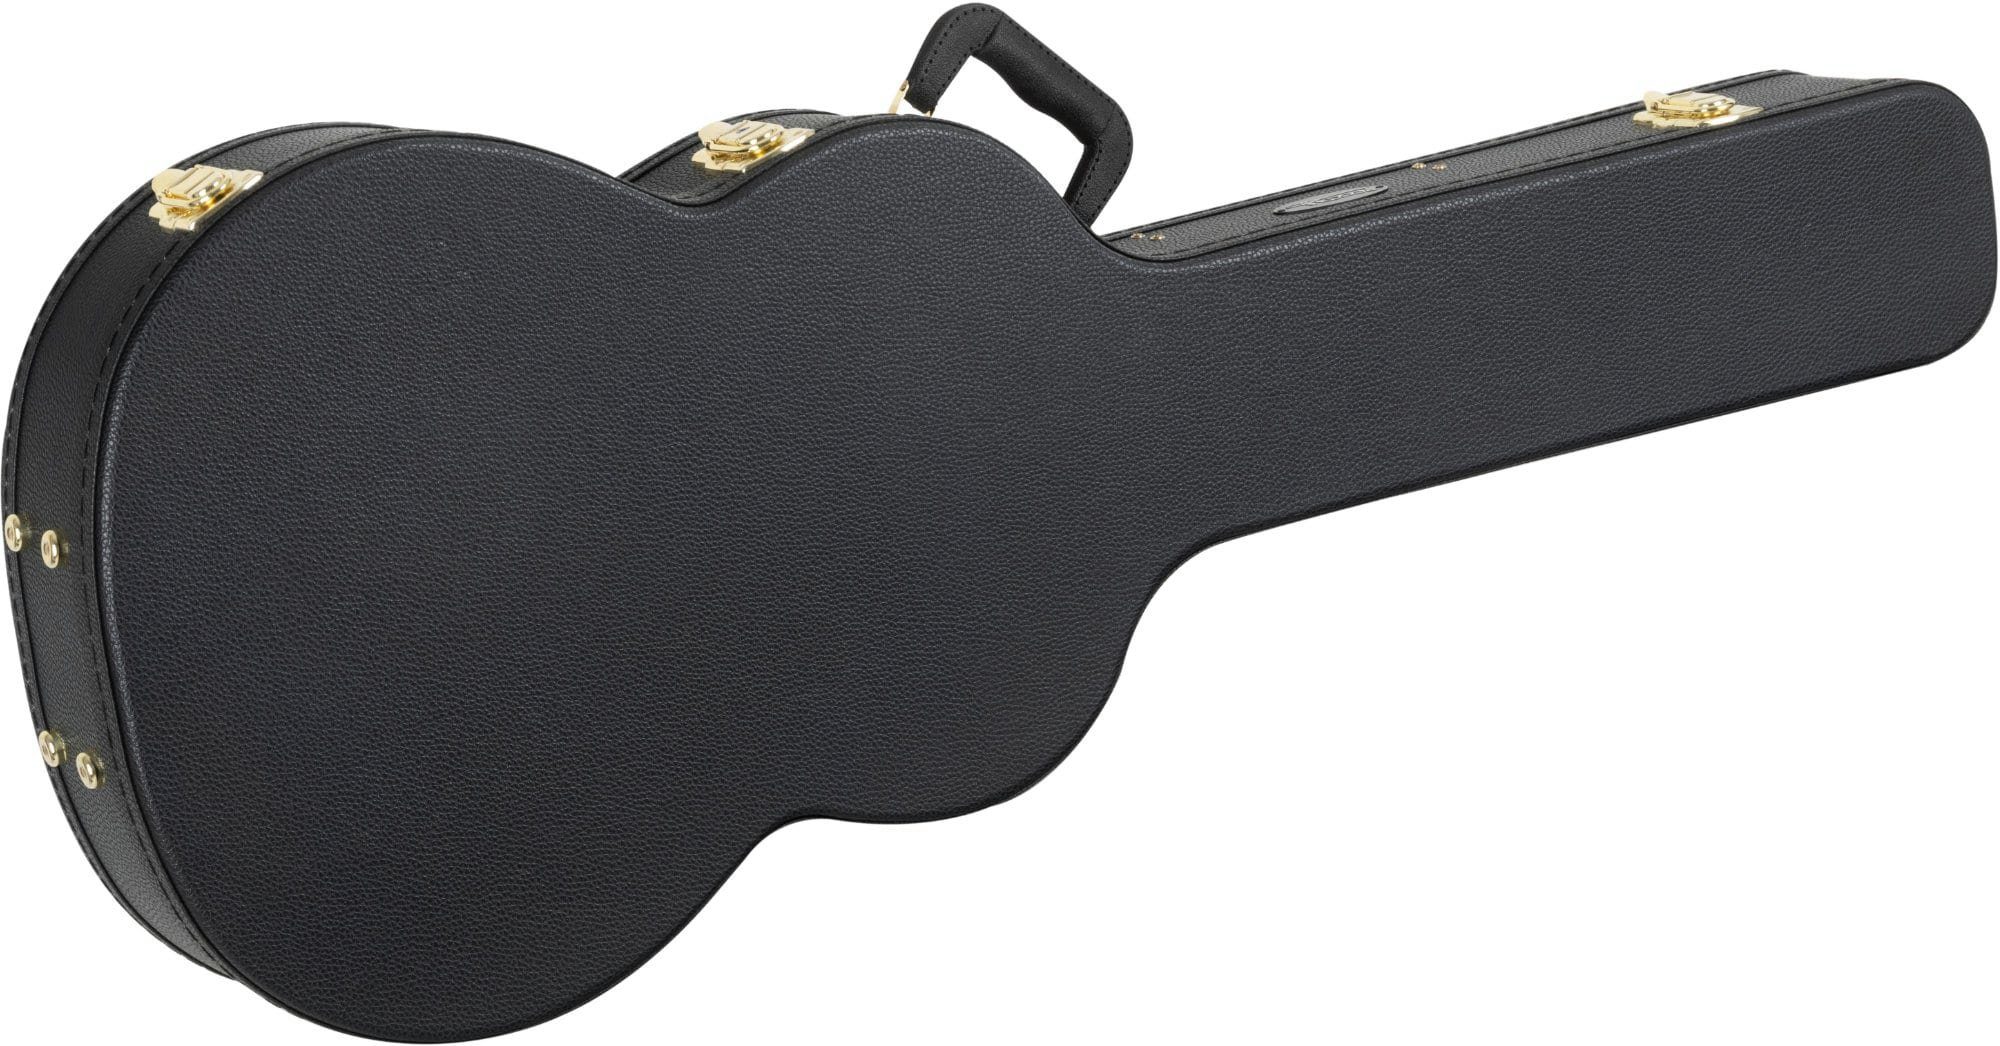 Rocktile Gitarrentasche Koffer für Klassik-Gitarre, Gitarrencase mit Innenfutter aus Plüsch, gepolsterte Halsstütze